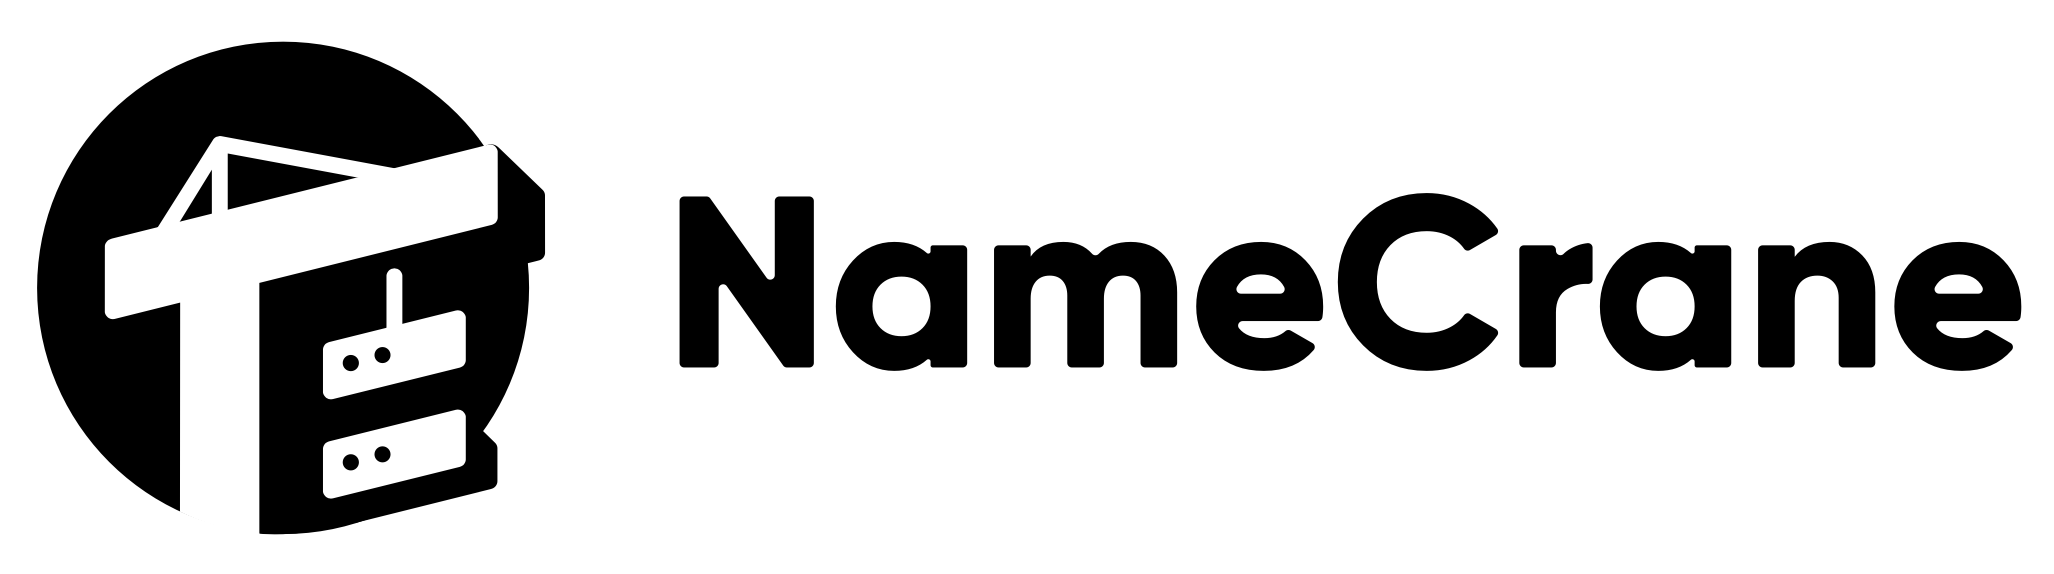 NameCrane